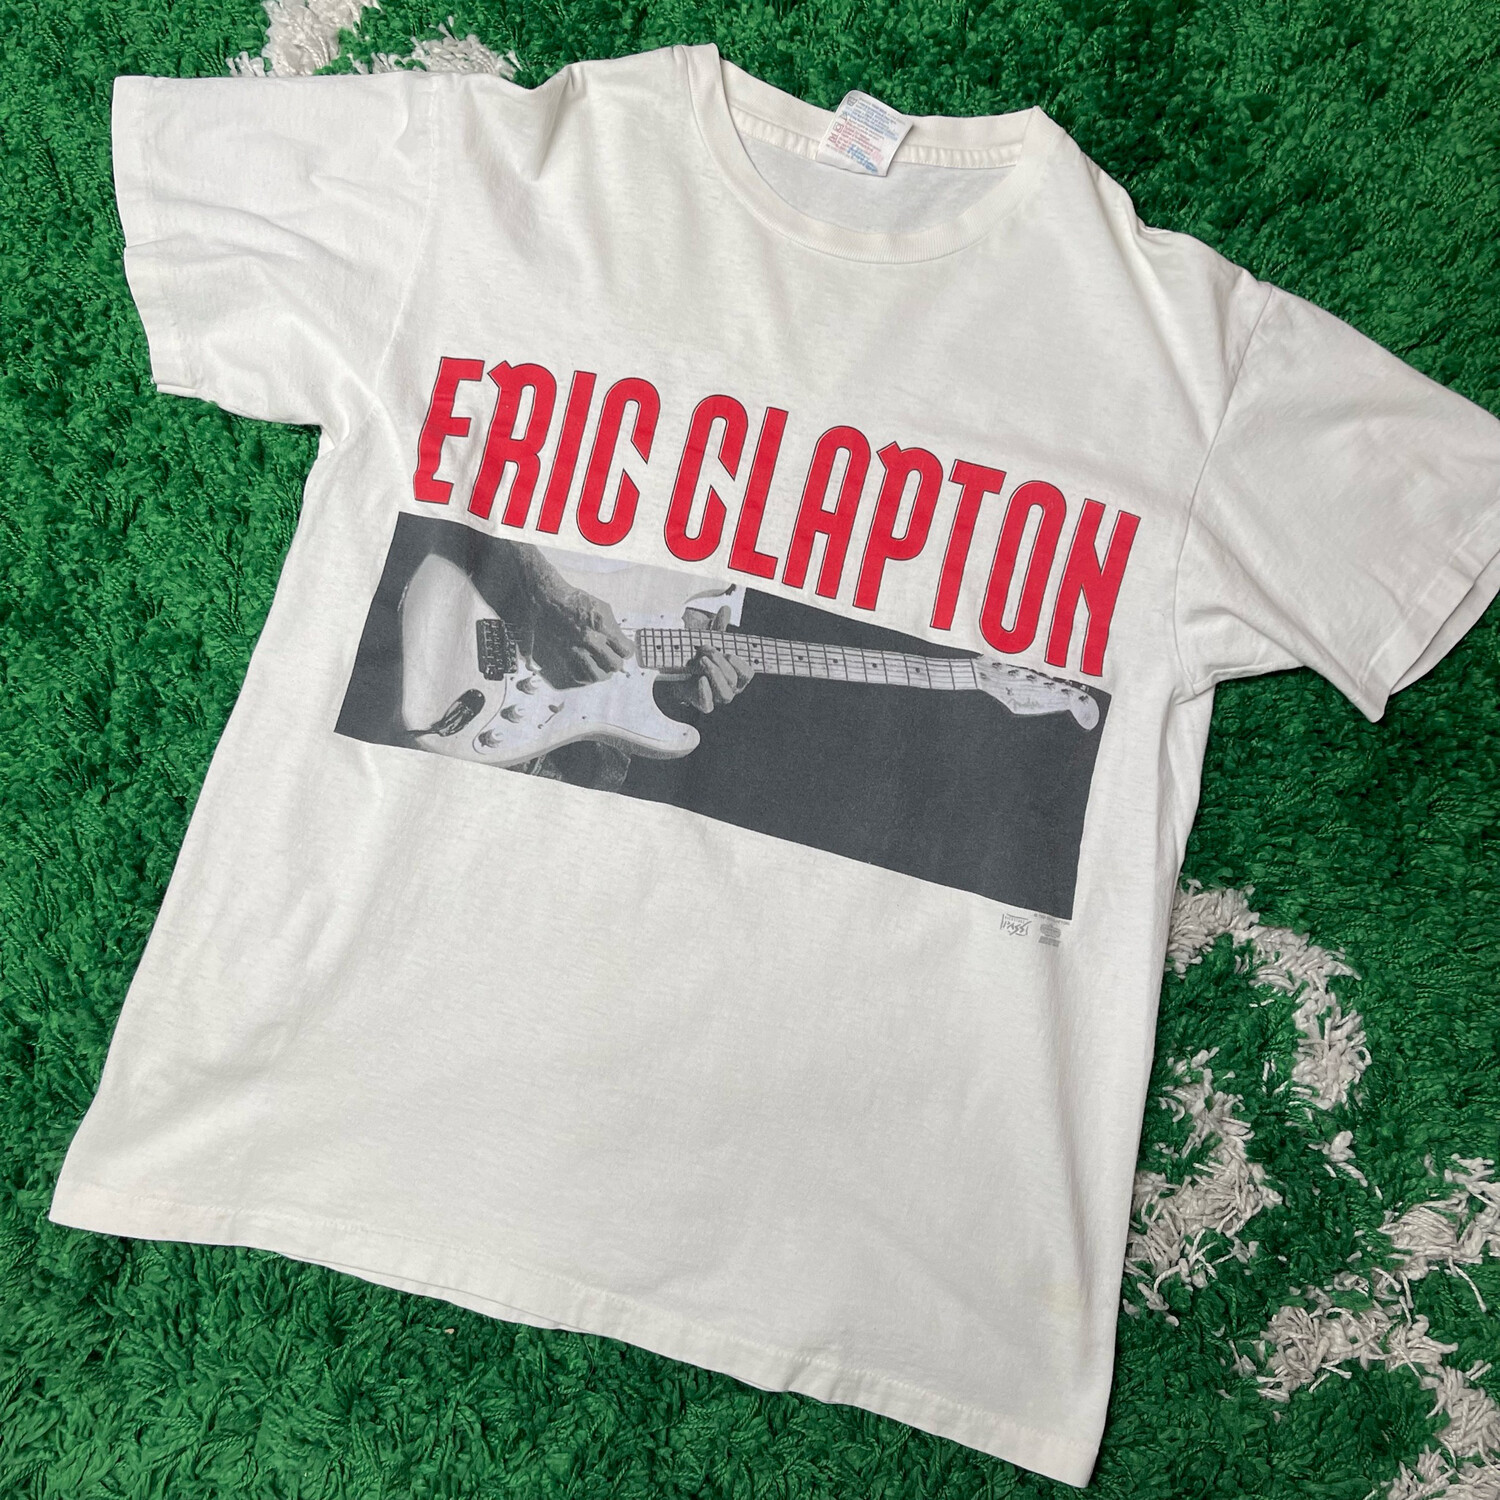 Eric Clapton Tour Tee Size Large